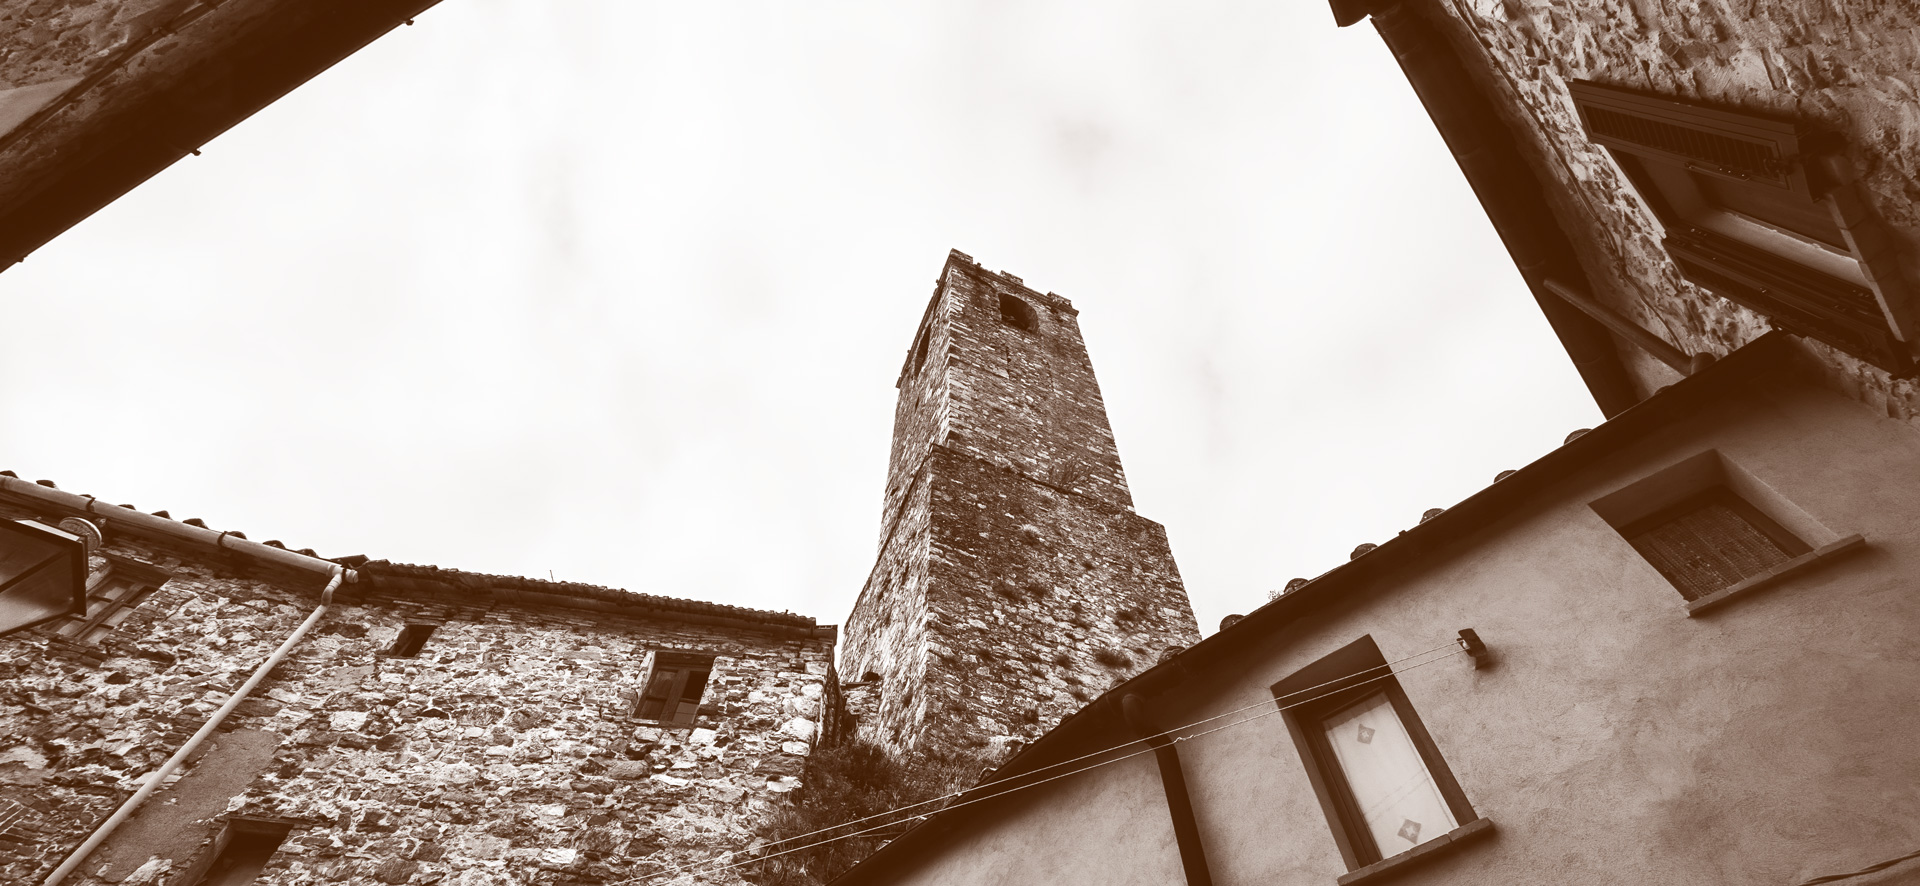 vivicastelnuovo- immagine campanile della chiesa del santissimo salvatore